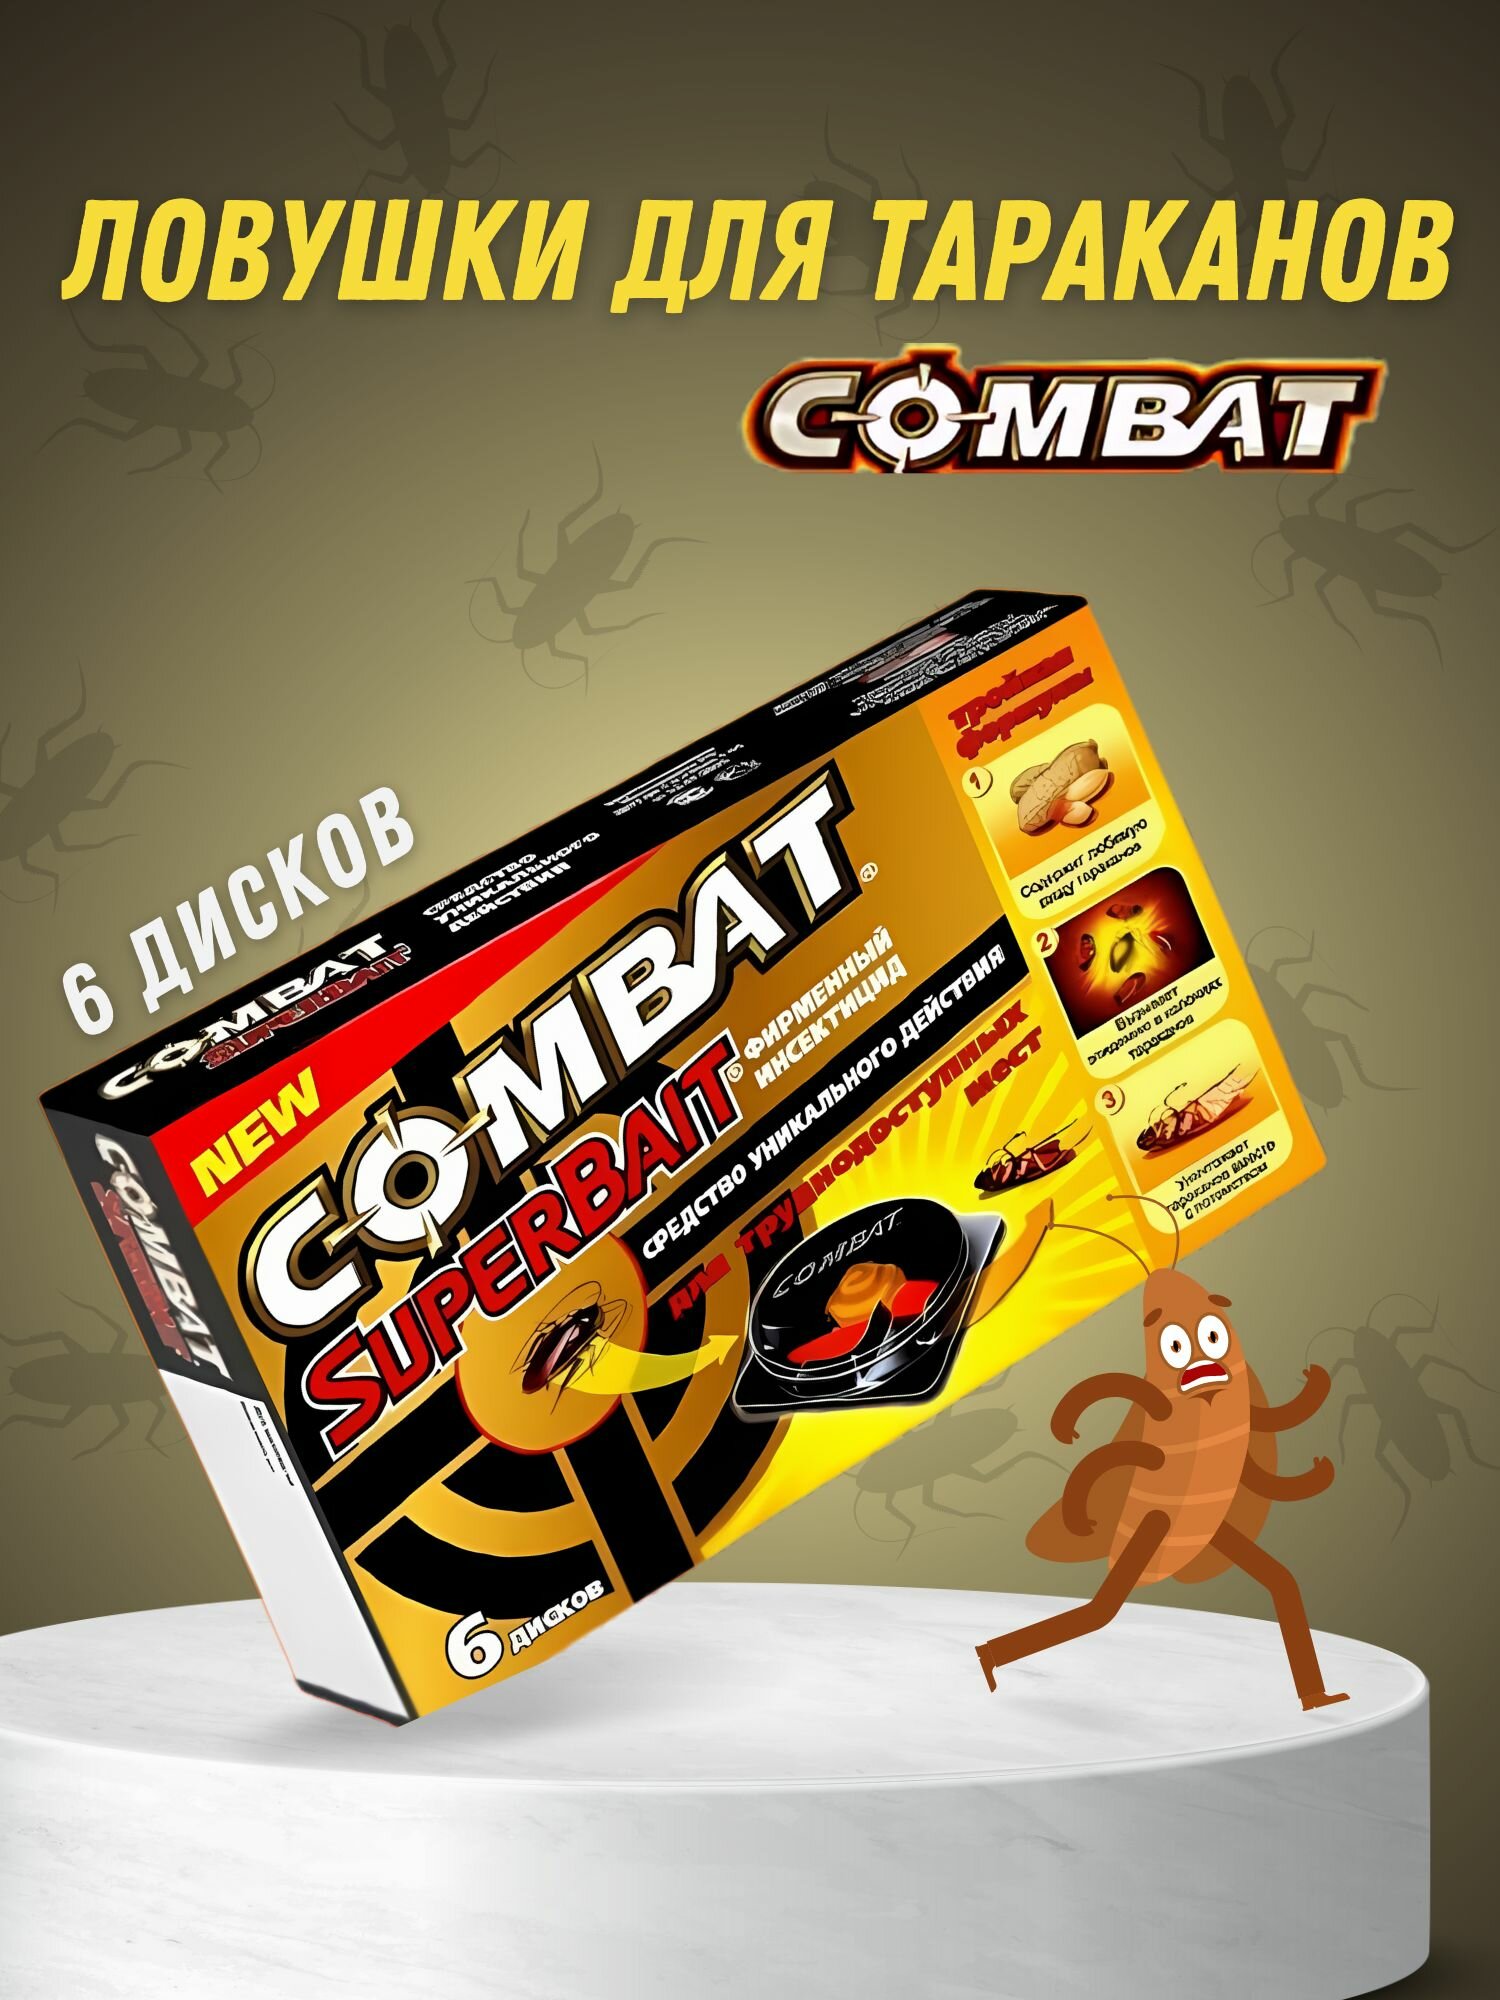 Ловушки от тараканов 6 дисков Combat